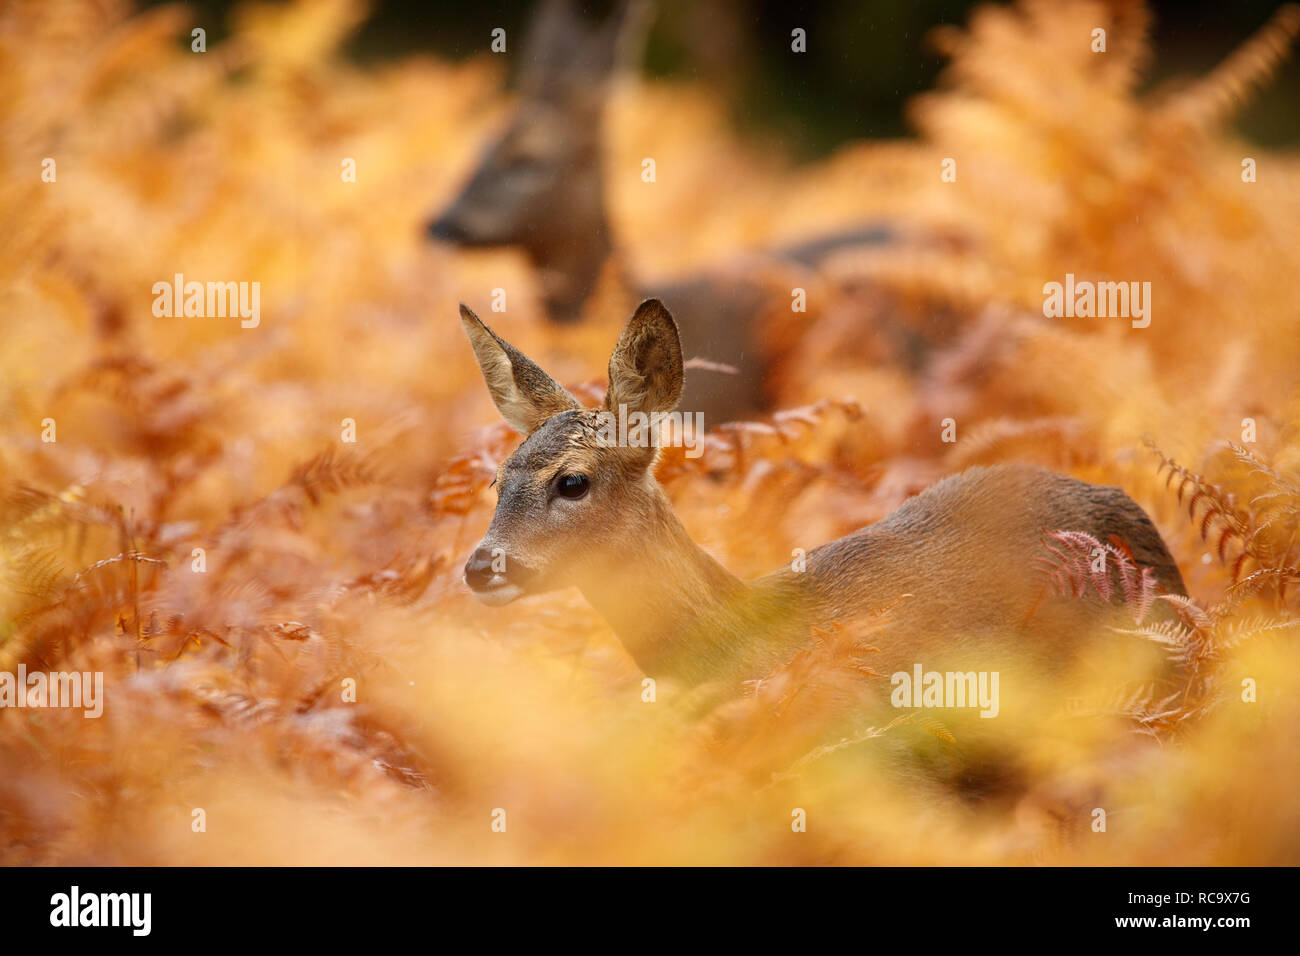 Young roe deer in autumnal orange bracken Stock Photo